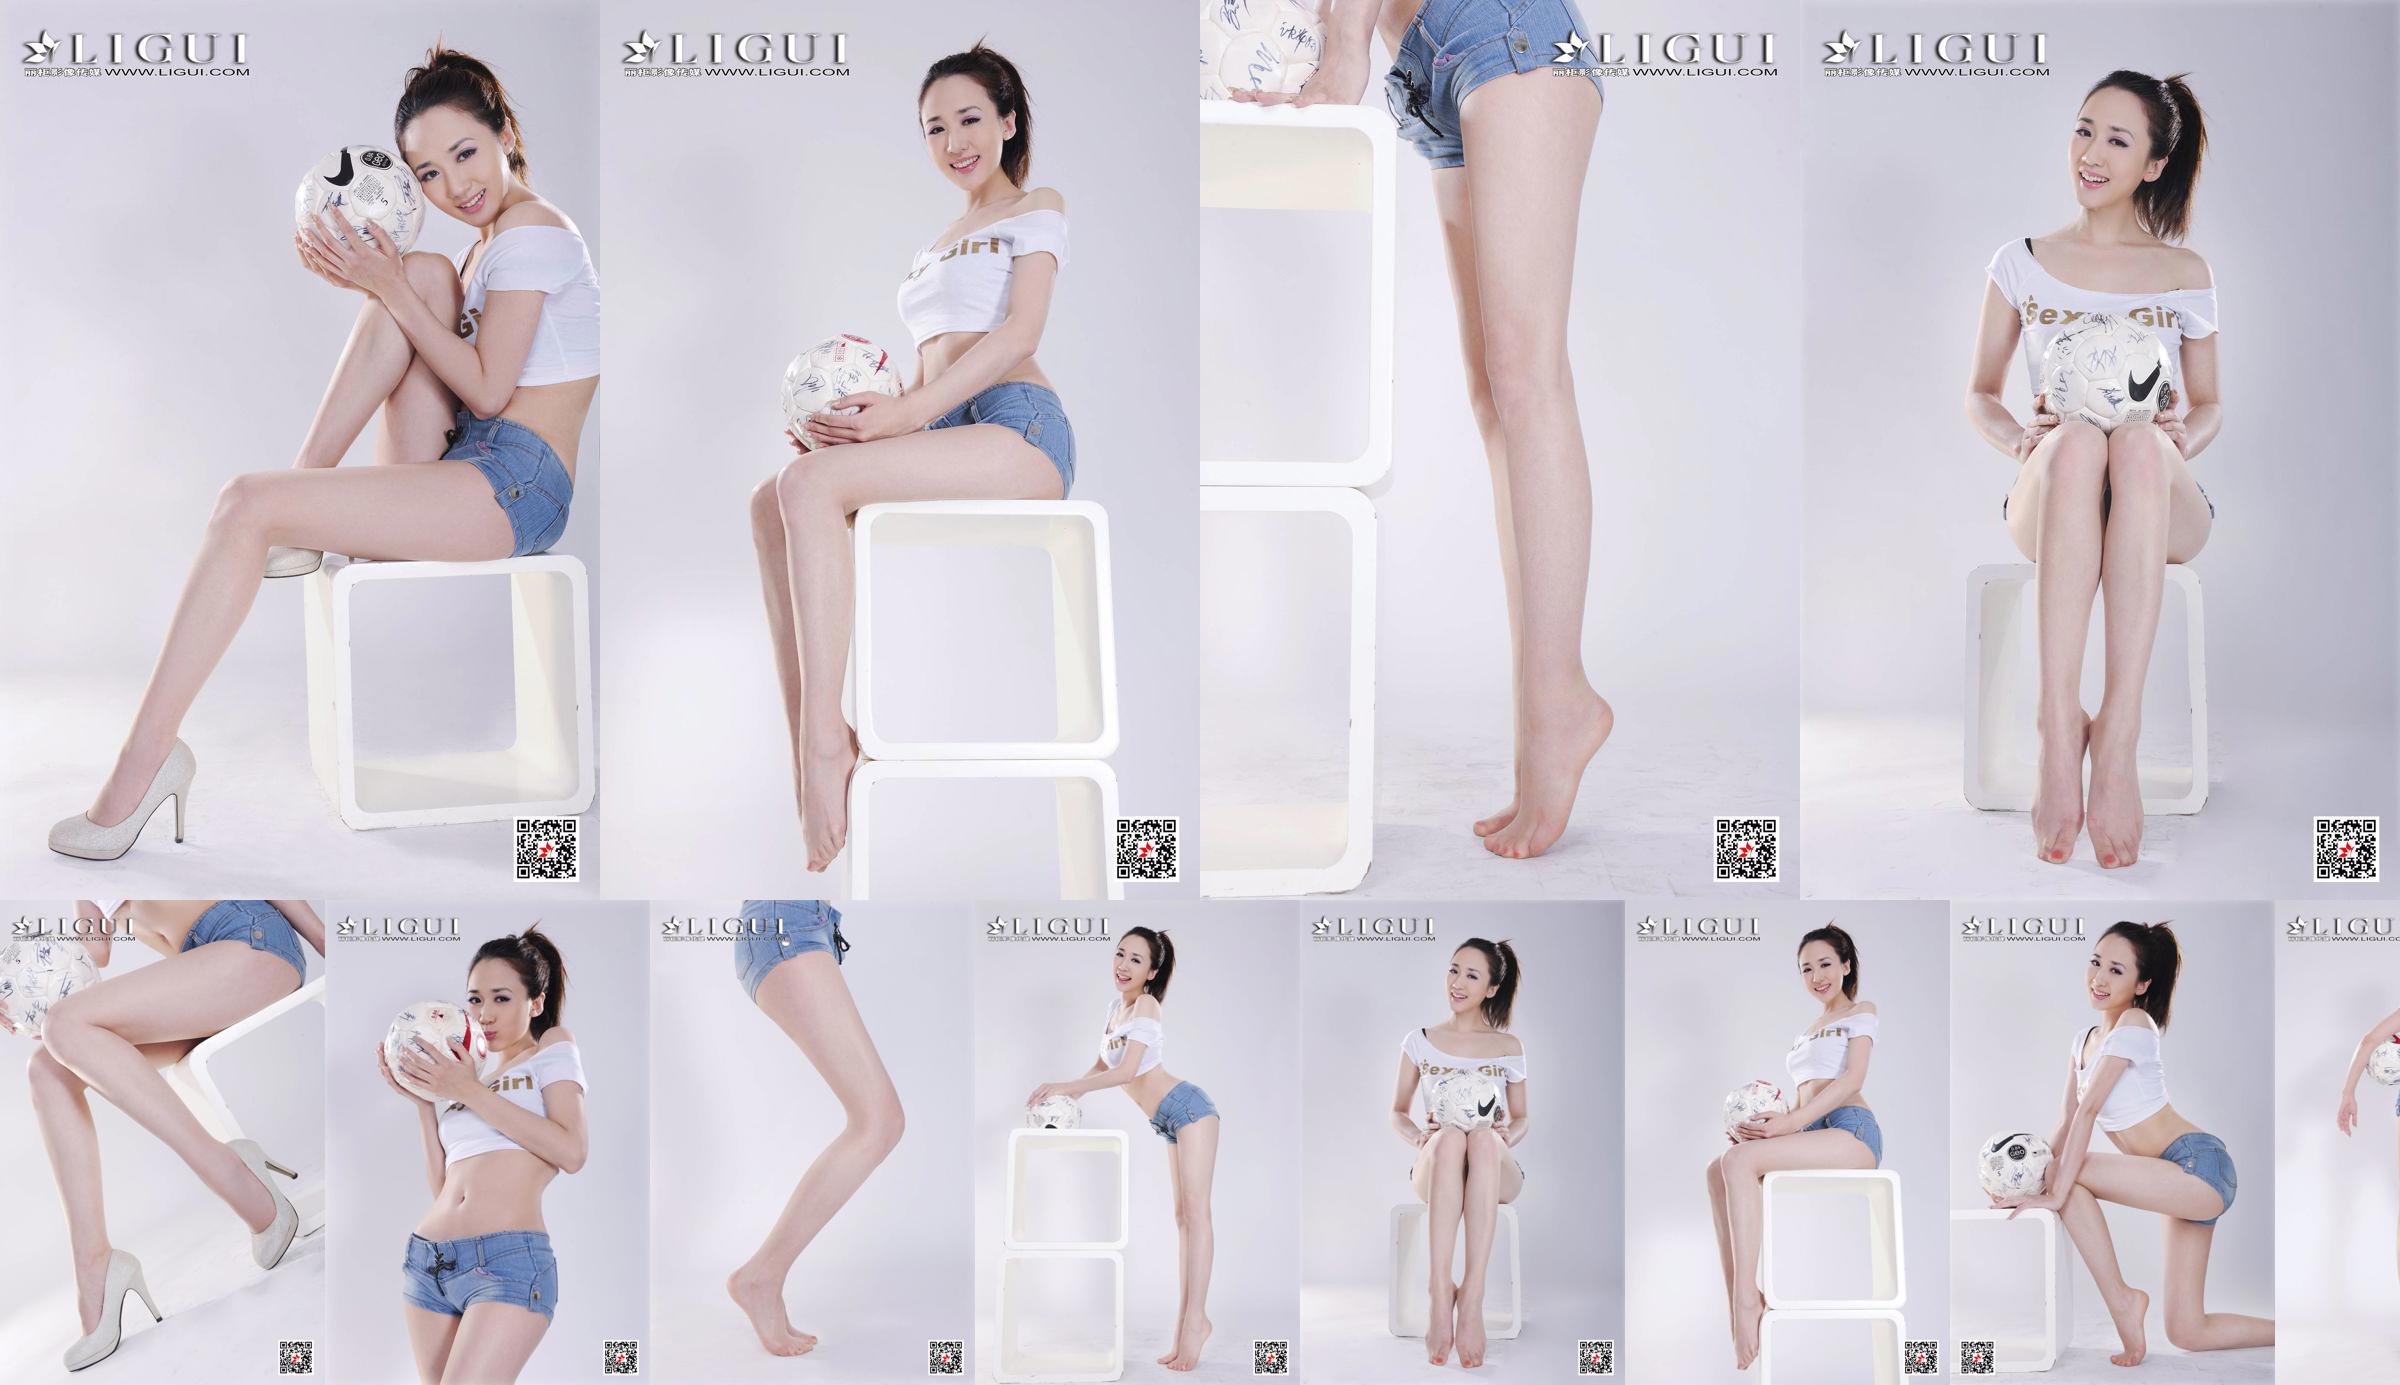 Model Qiu Chen "Super Short Hot Pants Football Girl" [LIGUI] No.a887e8 Page 12